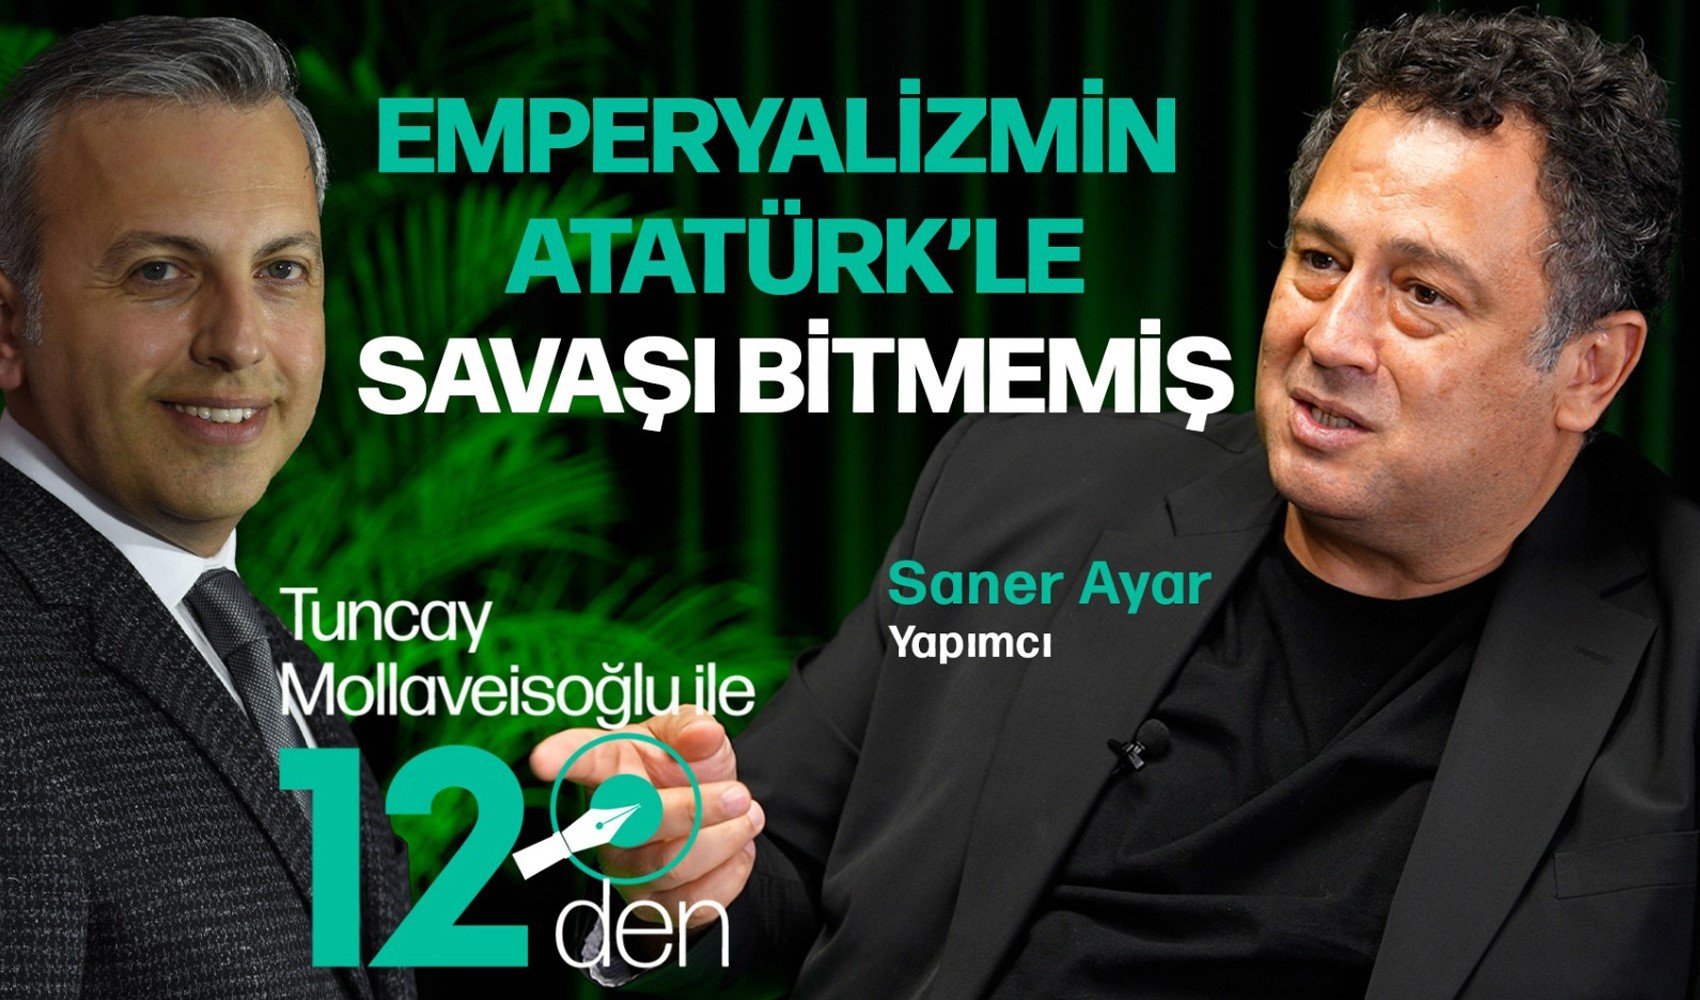 Tuncay Mollaveisoğlu ile 12'den programının konuğu Atatürk filminin yapımcısı Saner Ayar oldu: 'Emperyalizmin Atatürk'le savaşı bitmemiş...'